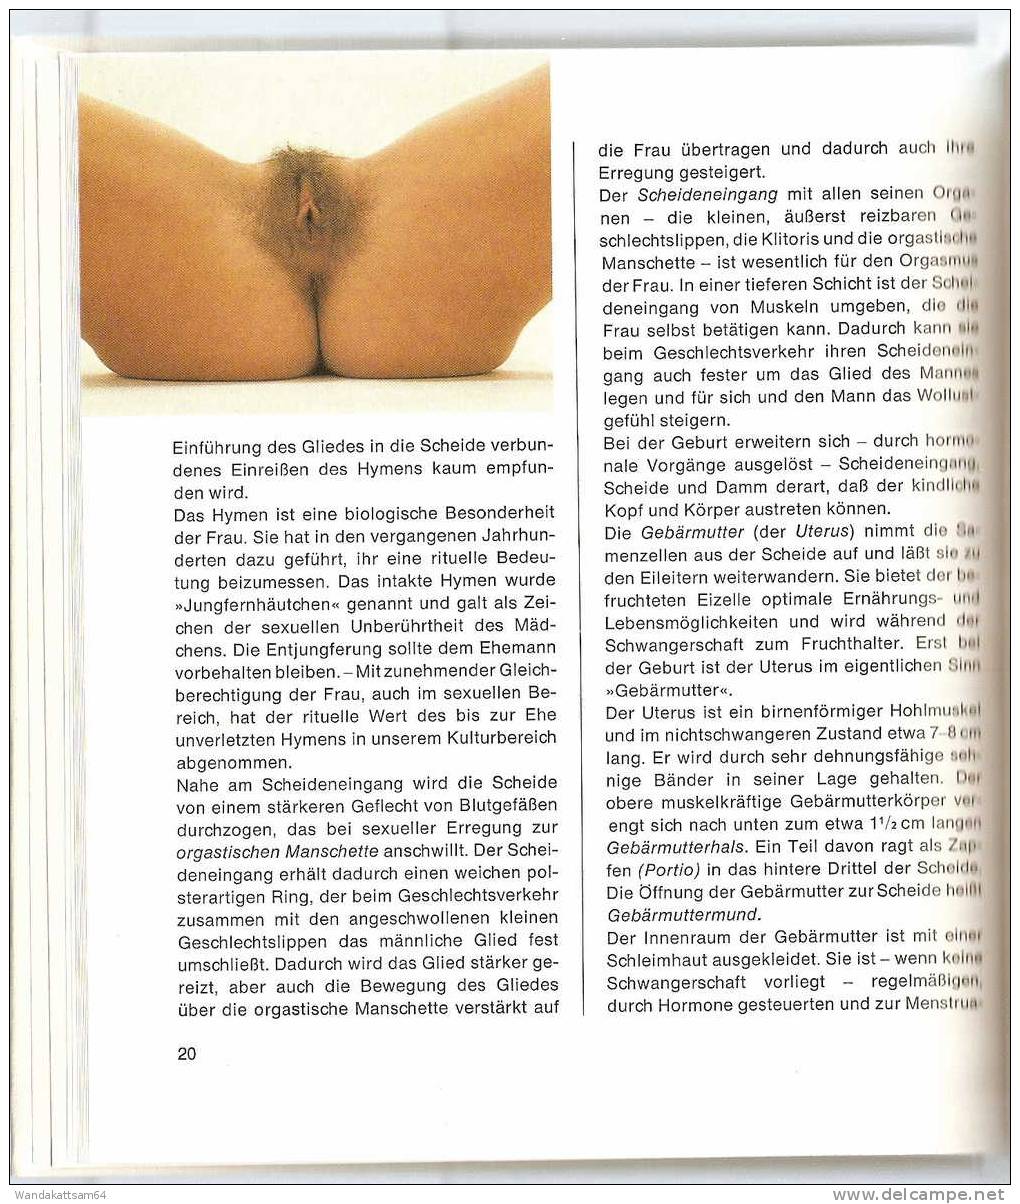 Junge, Madchen, Mann Und Frau Für 12 - 16 Jährige Aus Dem Gütersloher Verlagshaus Gerd Mohn 3. Auflage 1976 - Algemene Kennis